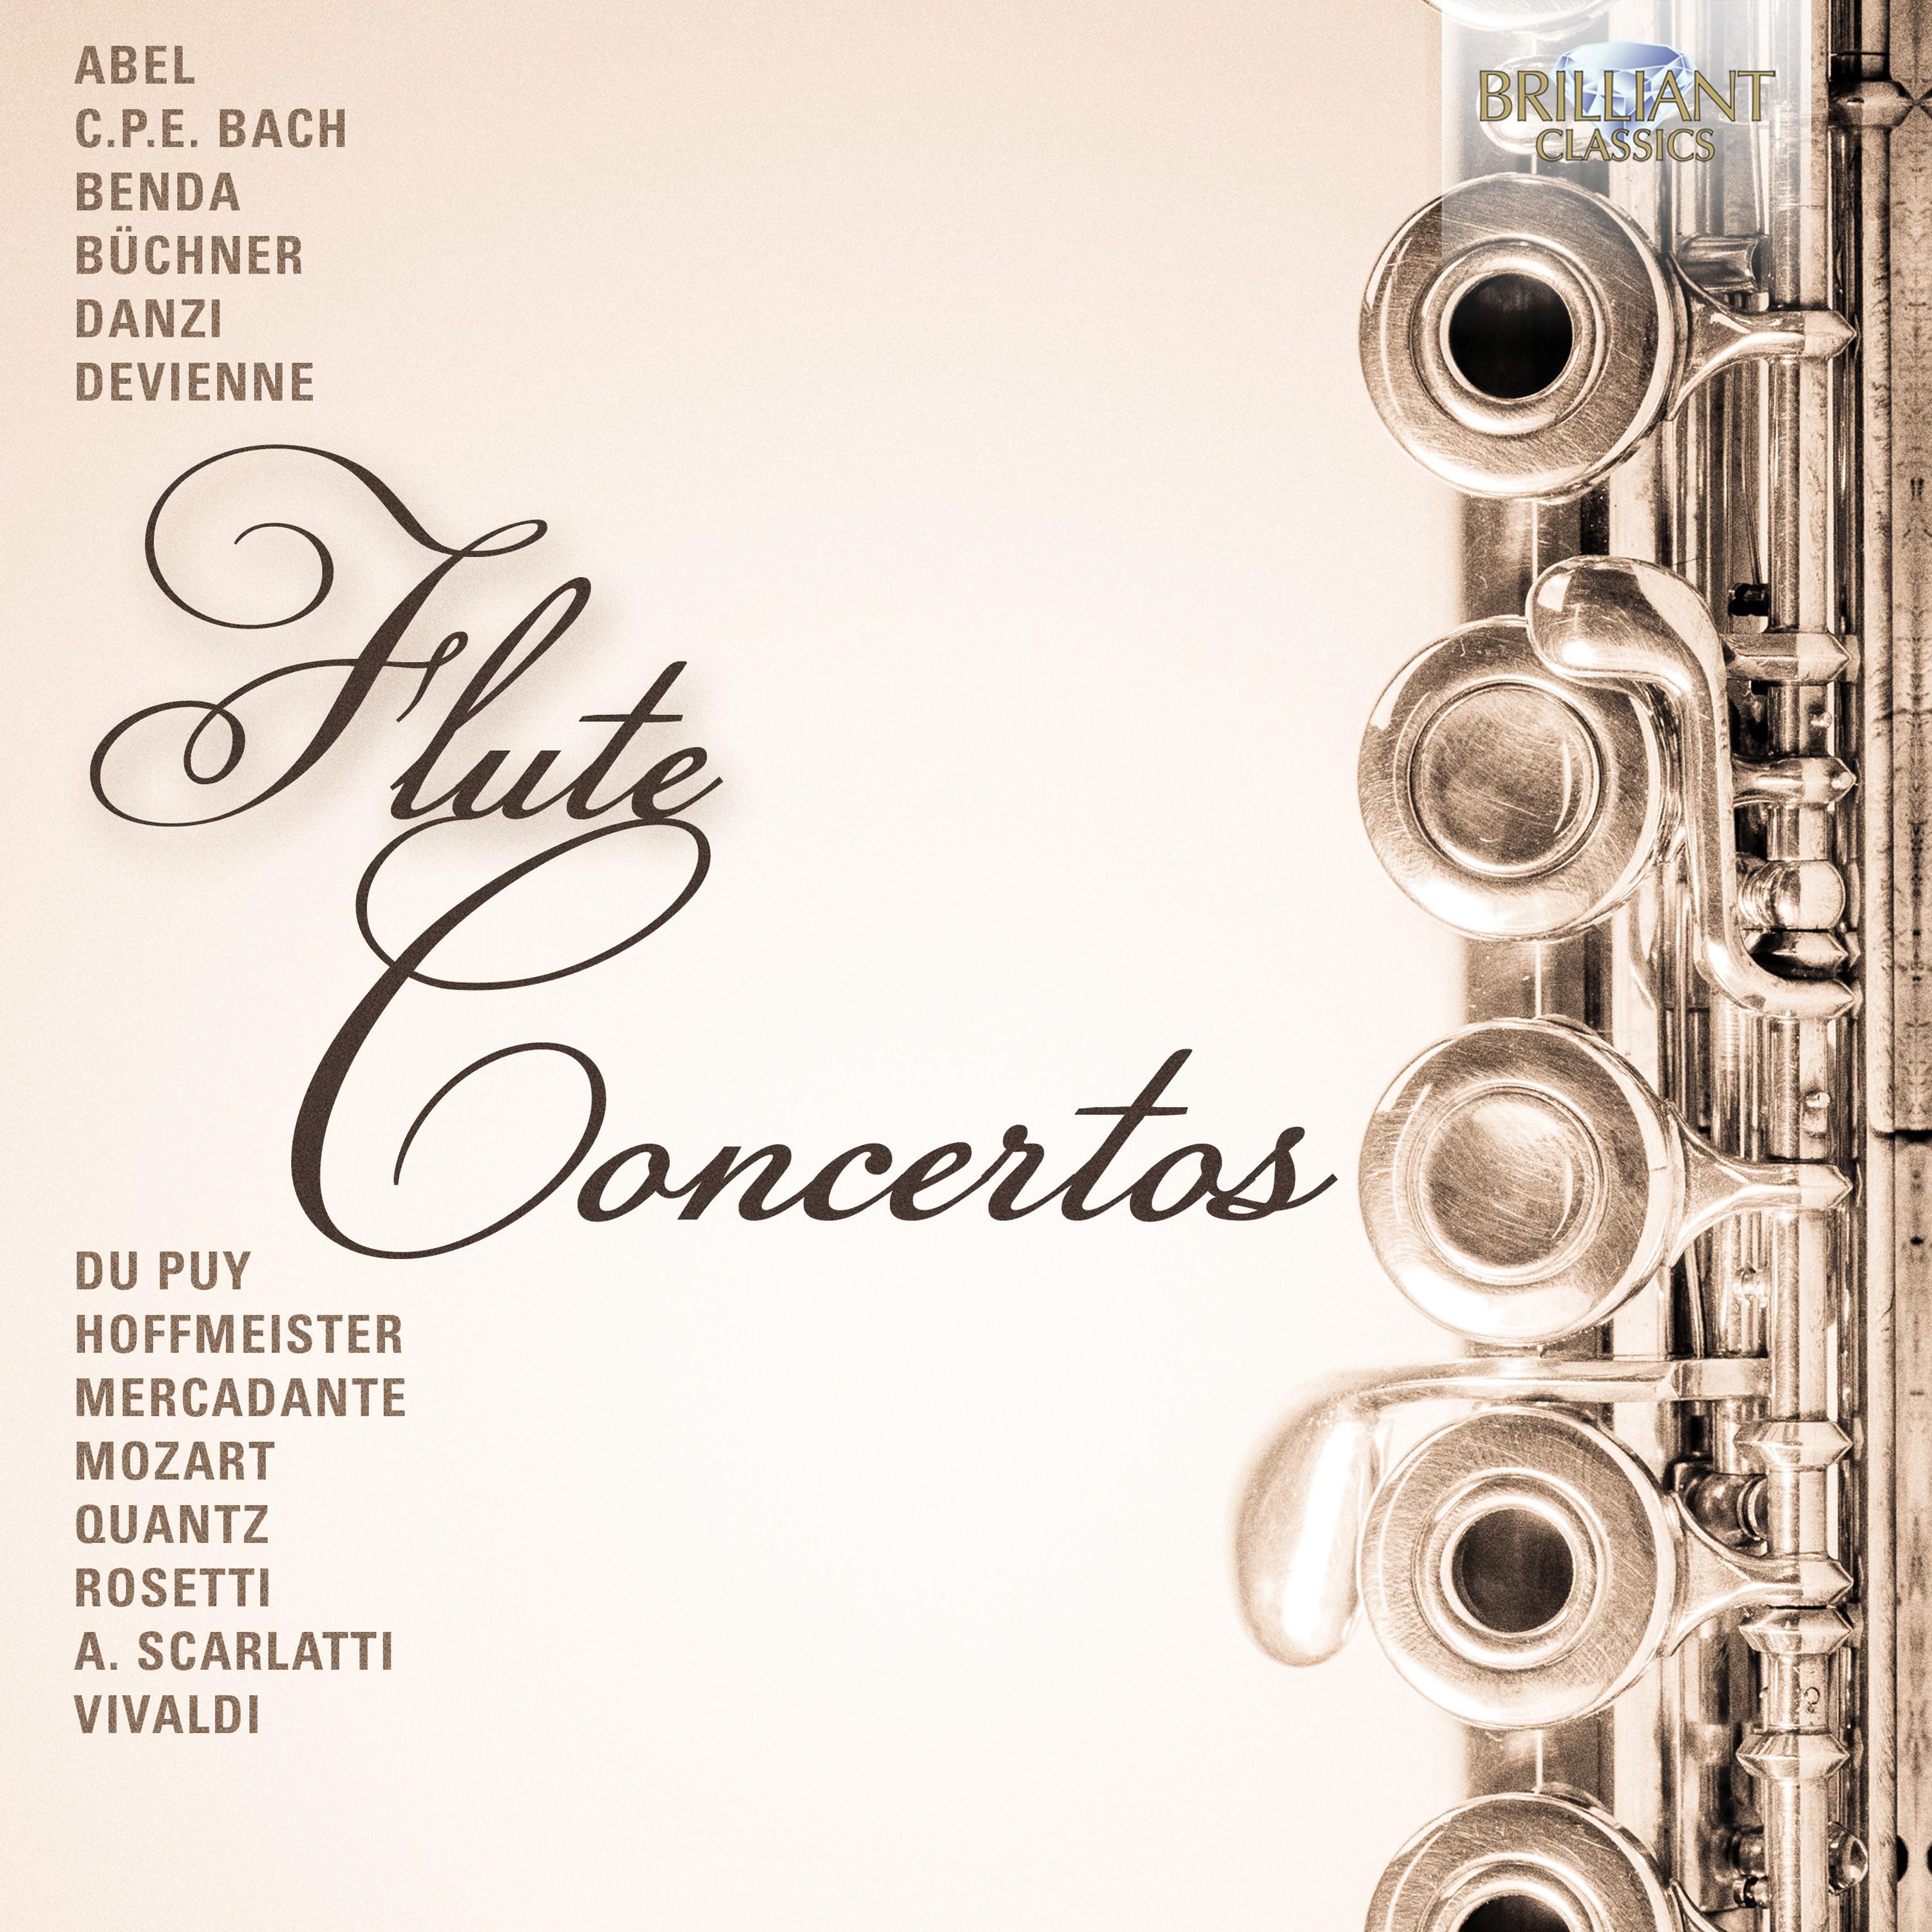 Concerto in E-Flat Major, Wq. 165: I. Allegro